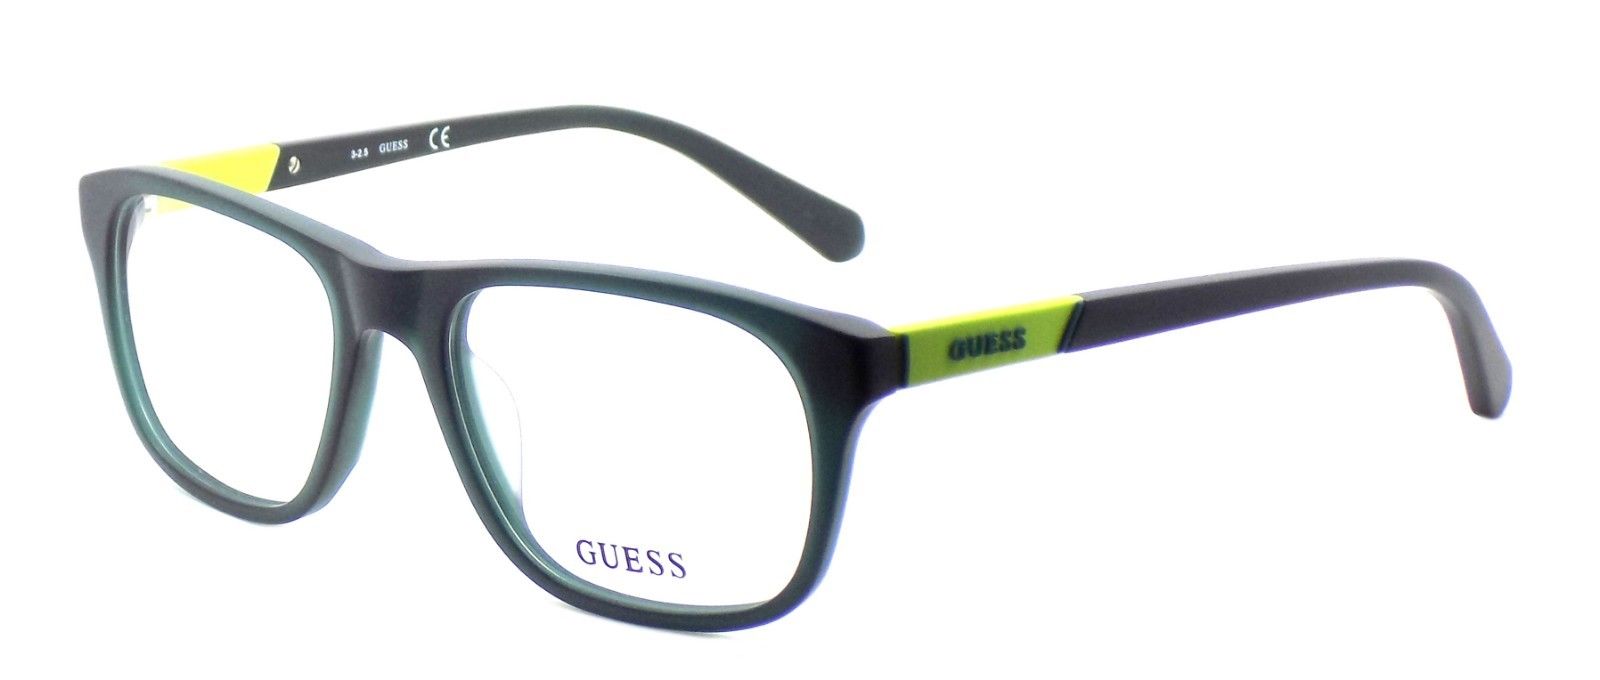 1-GUESS GU1866 097 Men's Eyeglasses Frames 53-18-145 Matte Dark Green + CASE-664689696246-IKSpecs